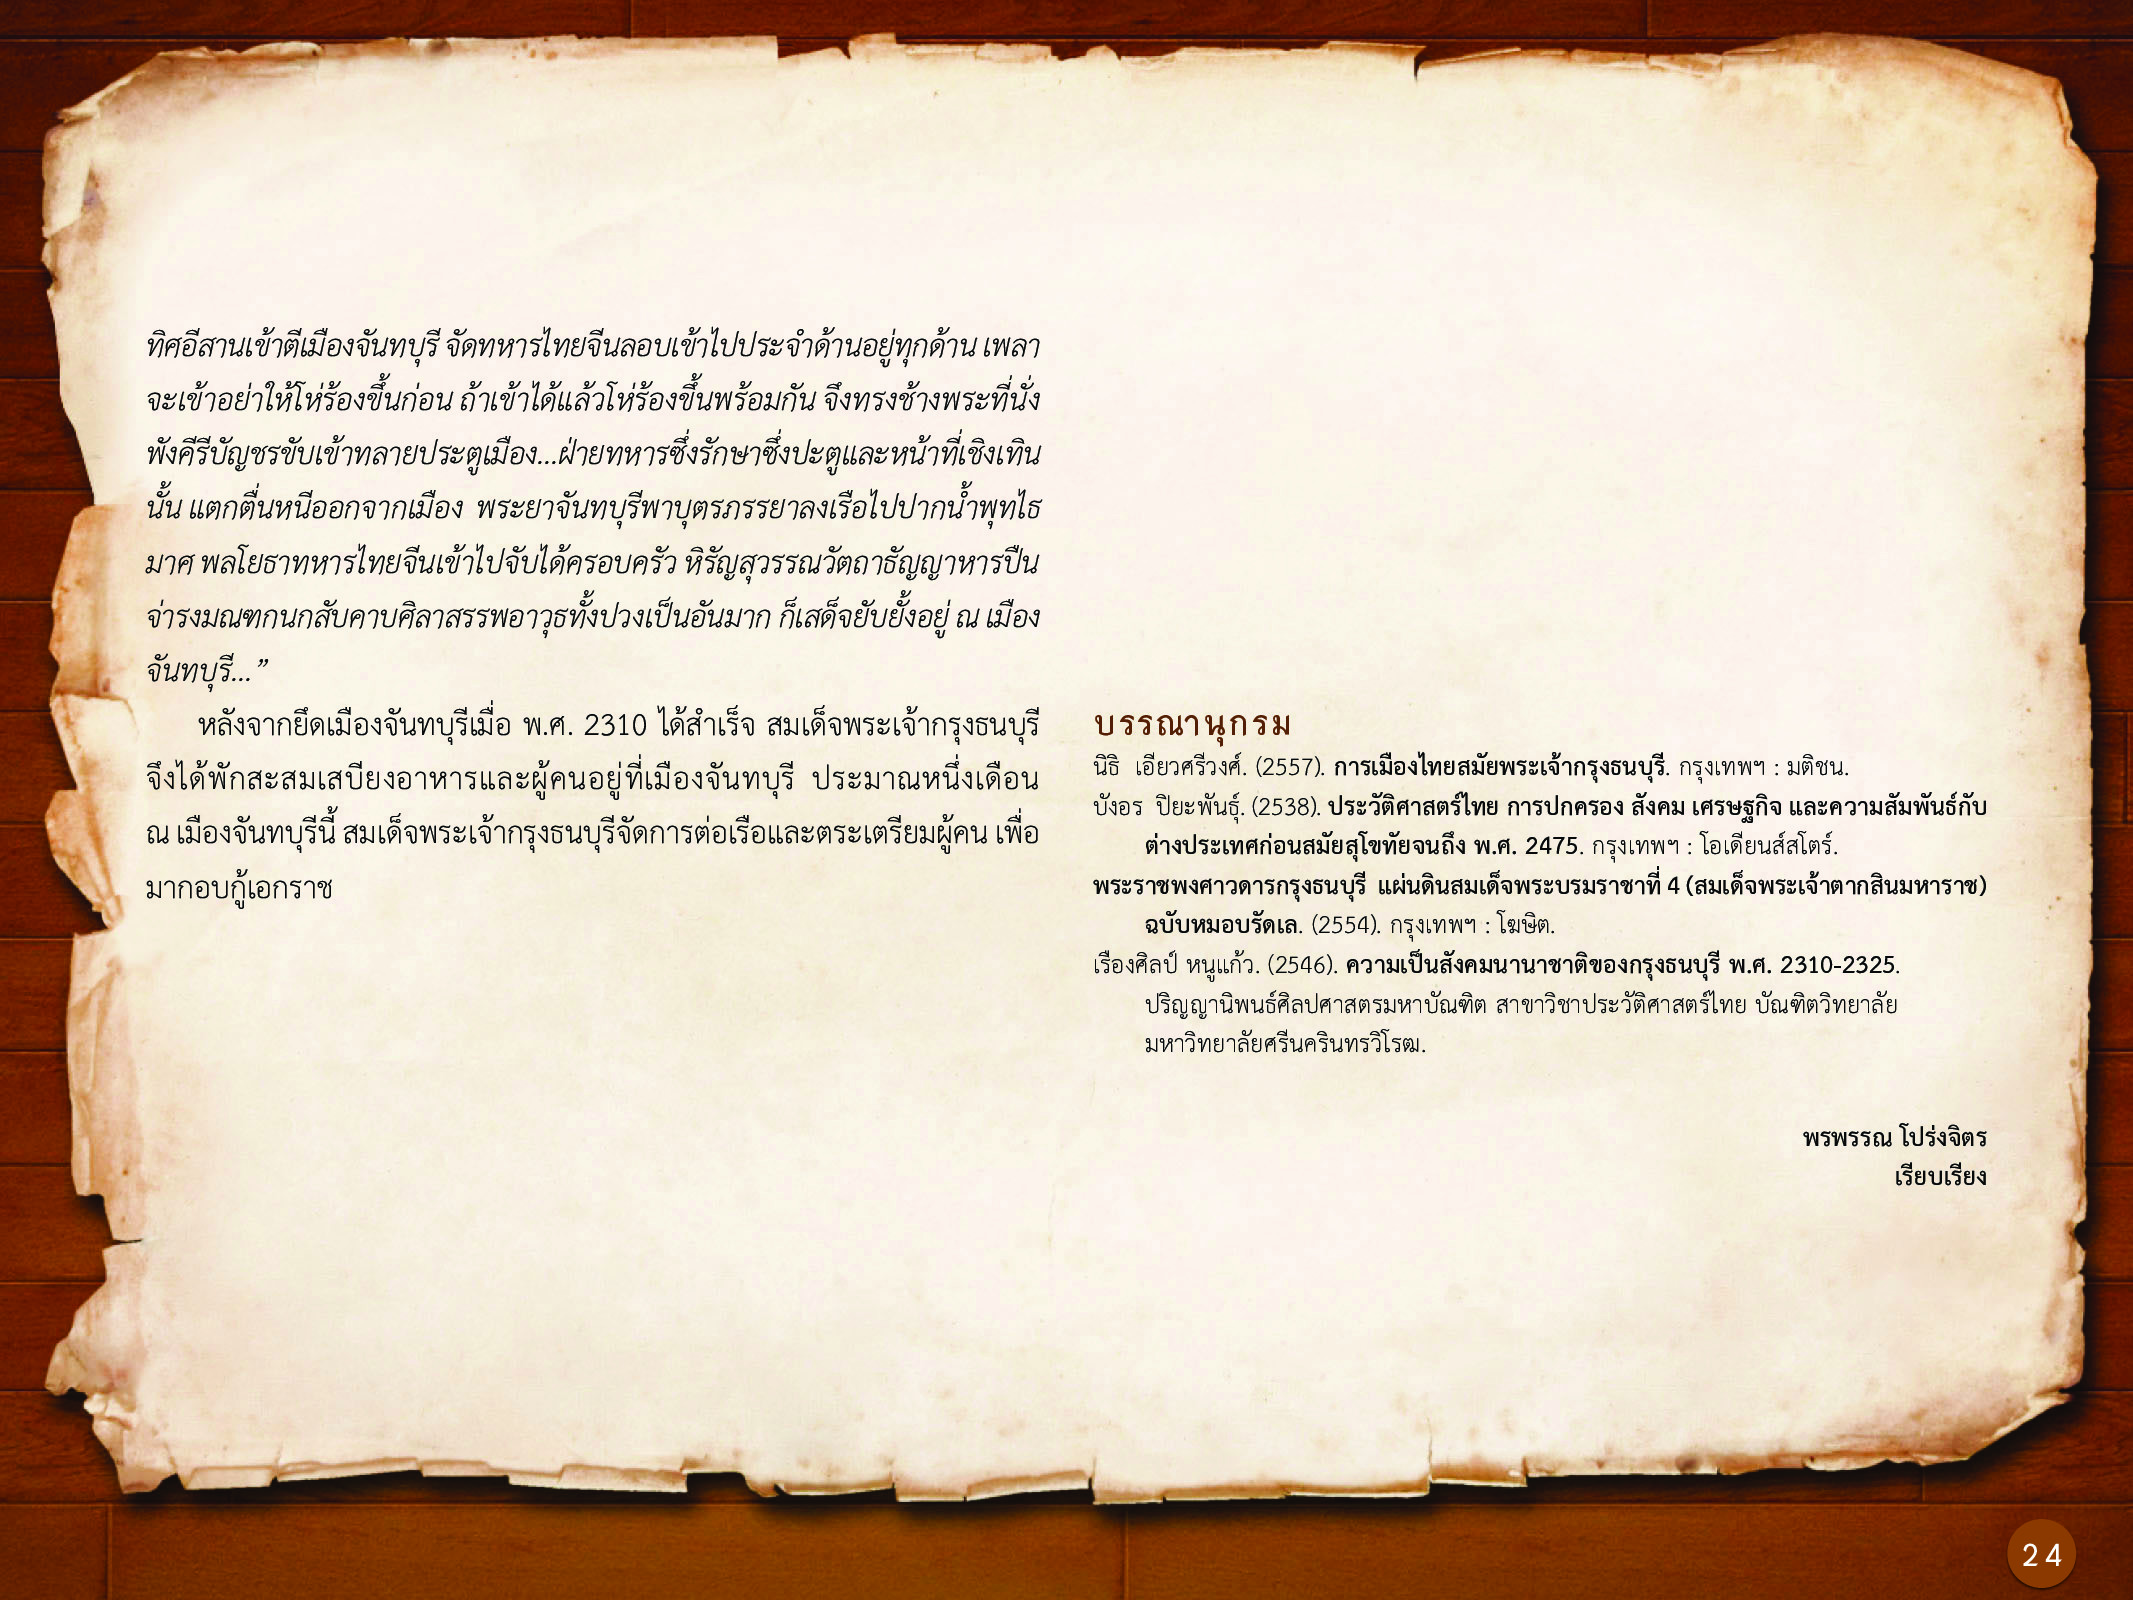 ประวัติศาสตร์กรุงธนบุรี ./images/history_dhonburi/24.jpg